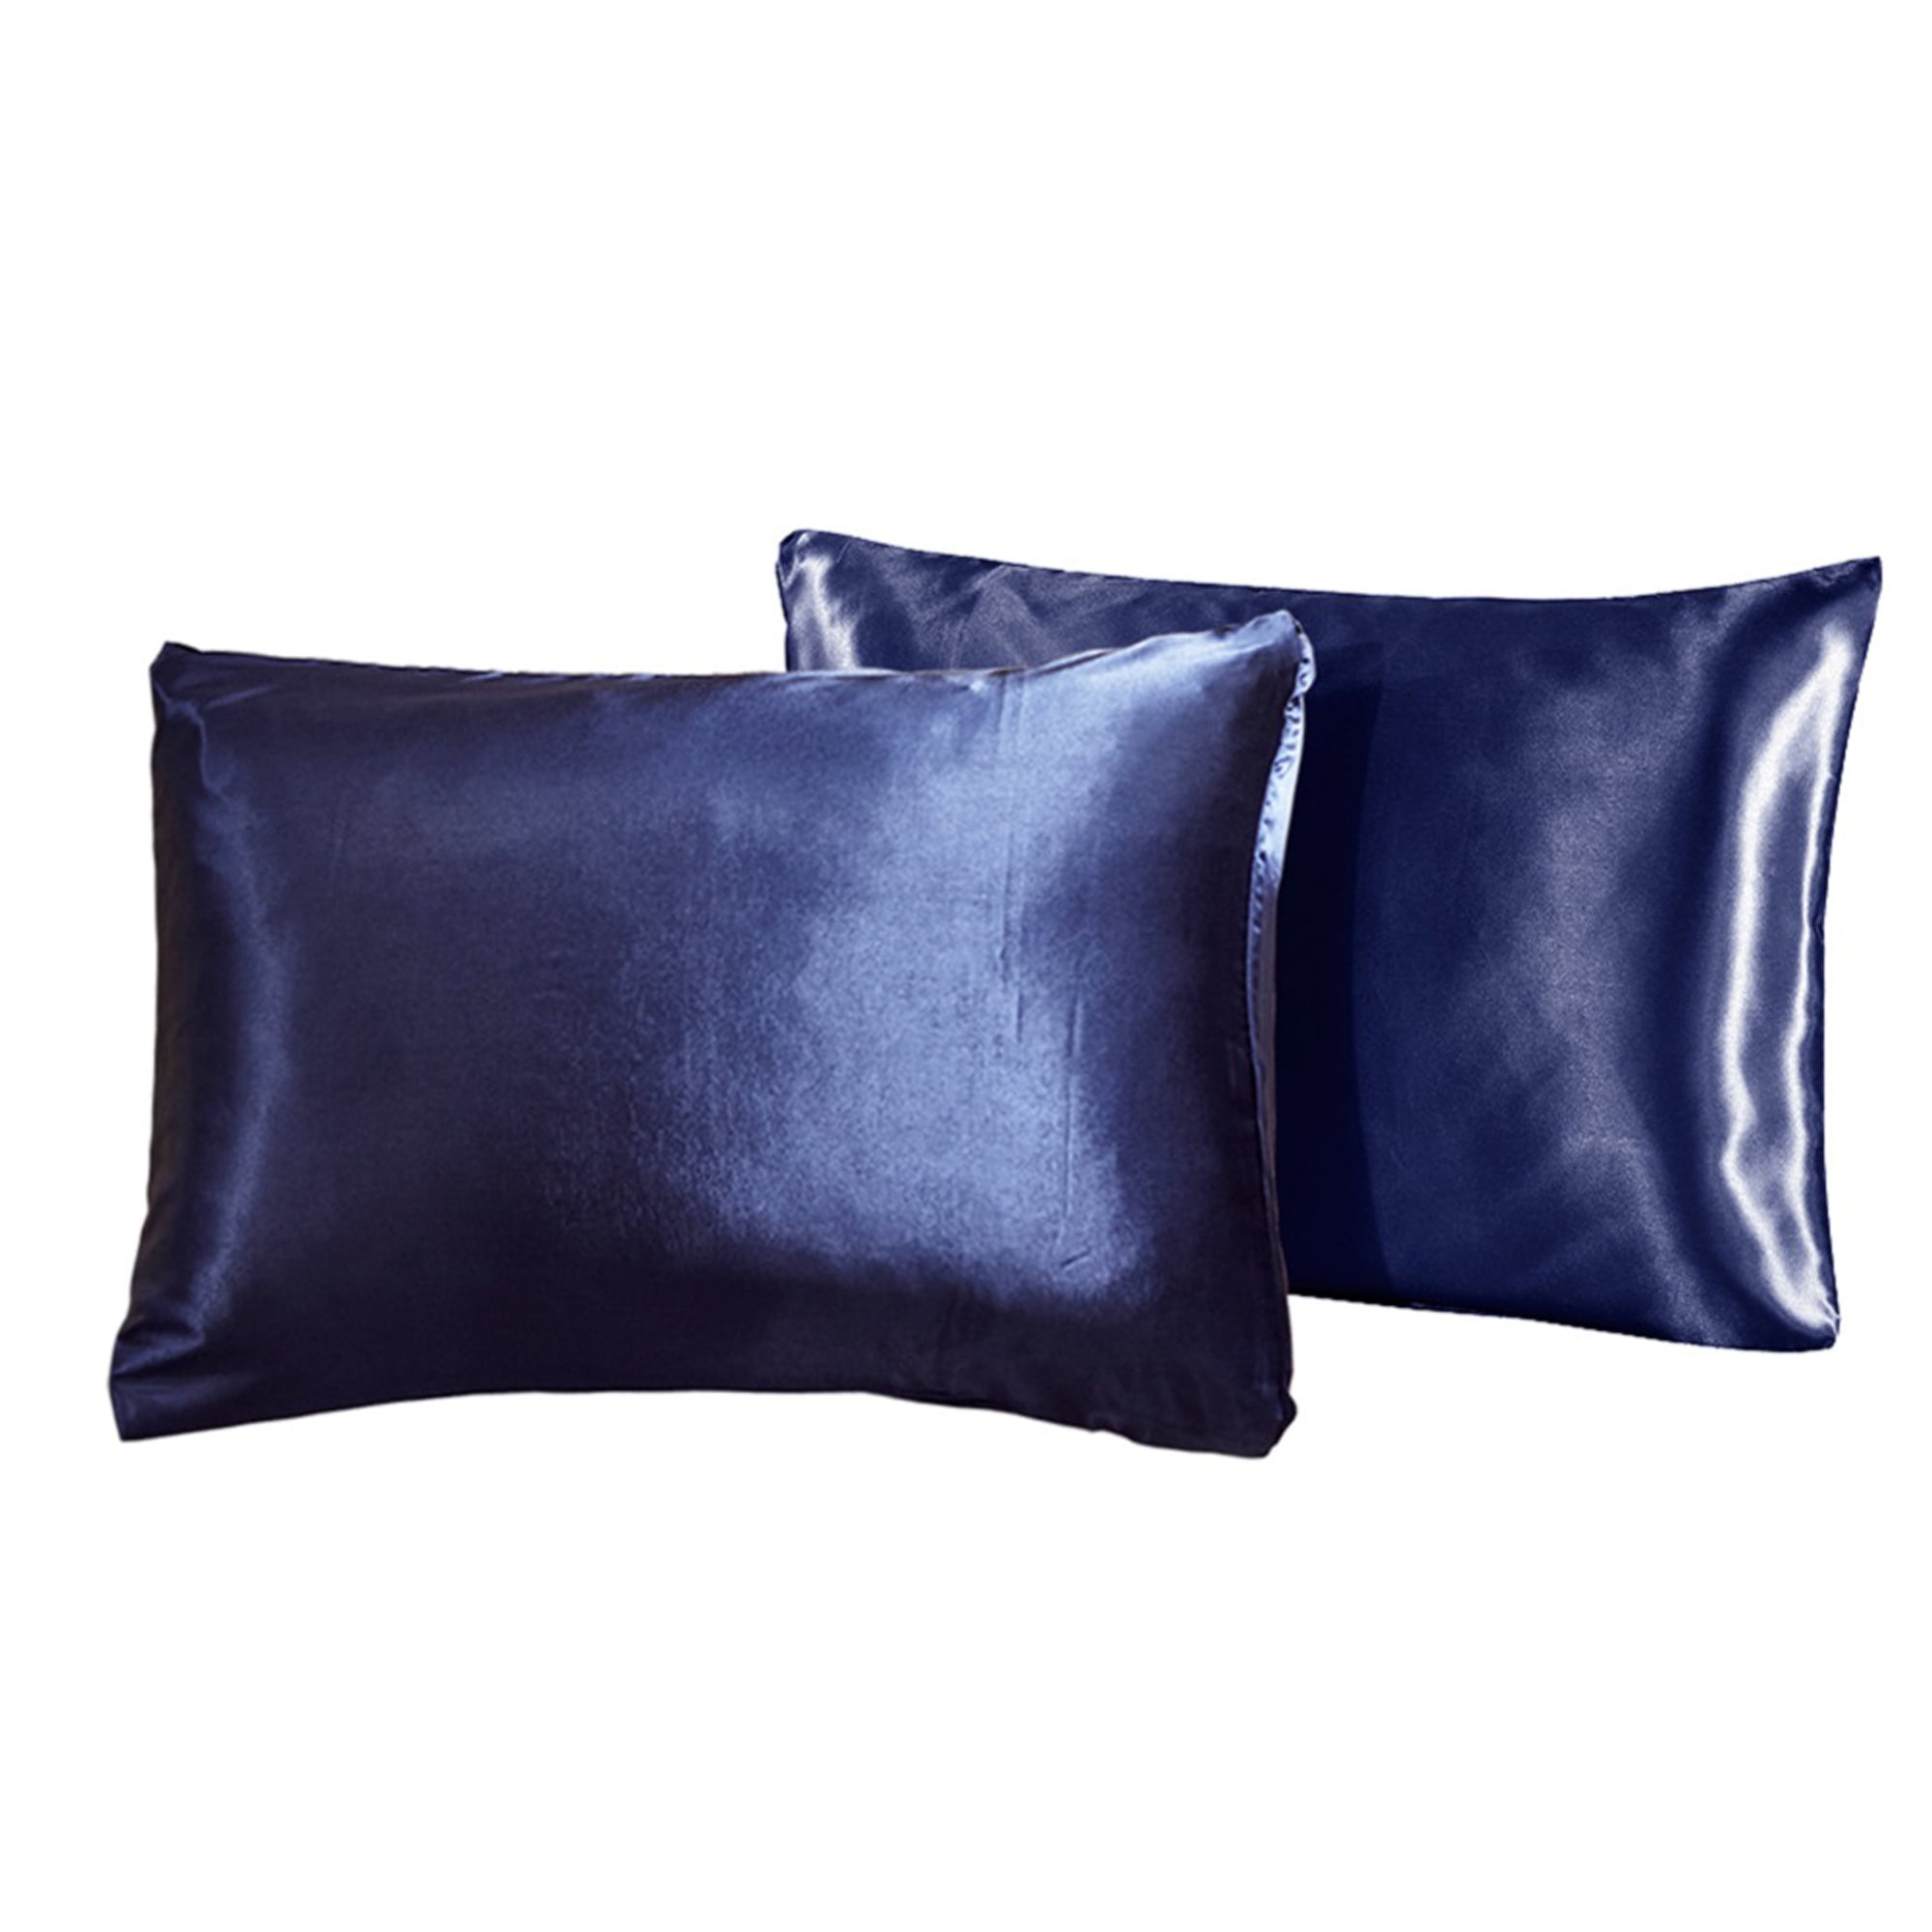 Details about   Solid Color Satin Silk Pillowcase 2PCS Envelope Pillow Case Free Size Pair Pack 